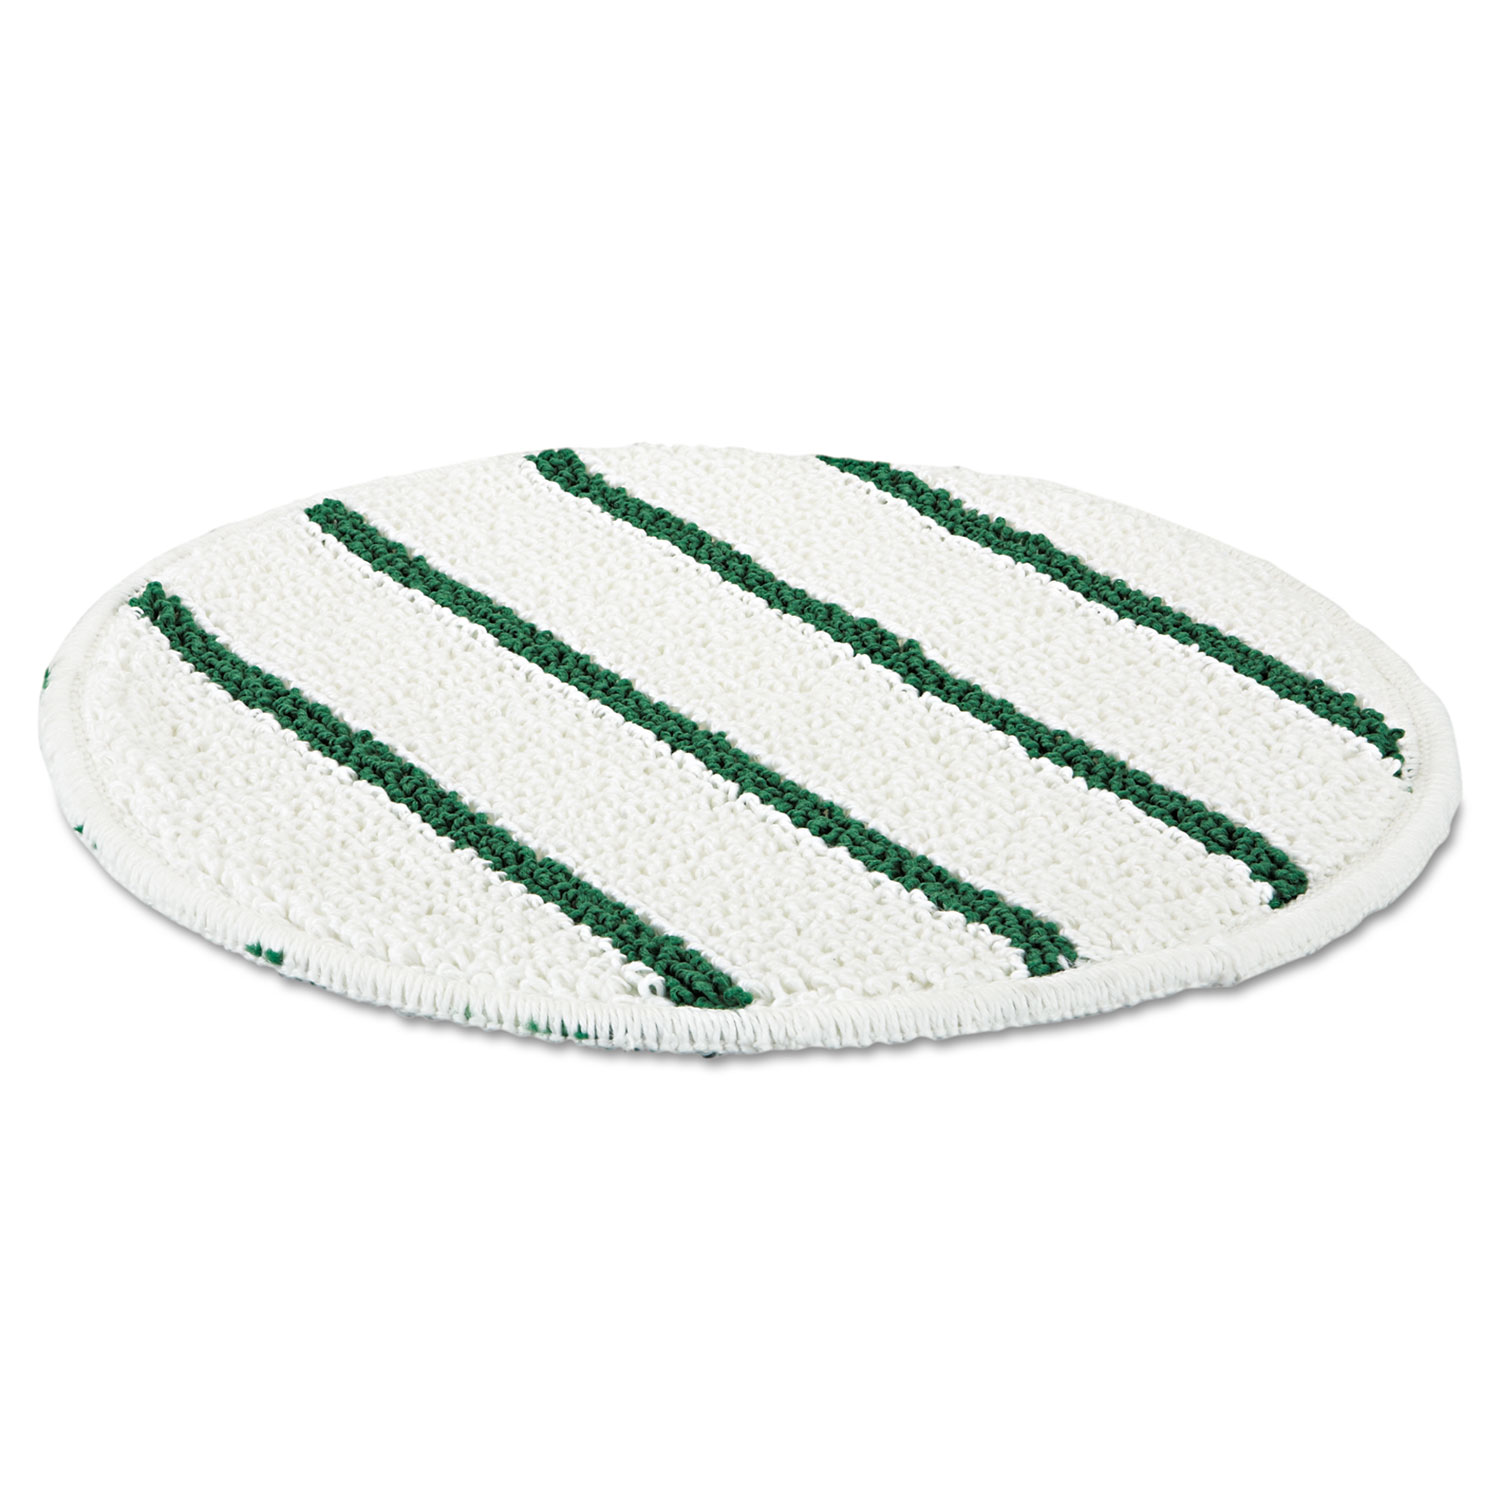 Low Profile Scrub-Strip Carpet Bonnet, 21 Diameter, White/Green, 5/Carton